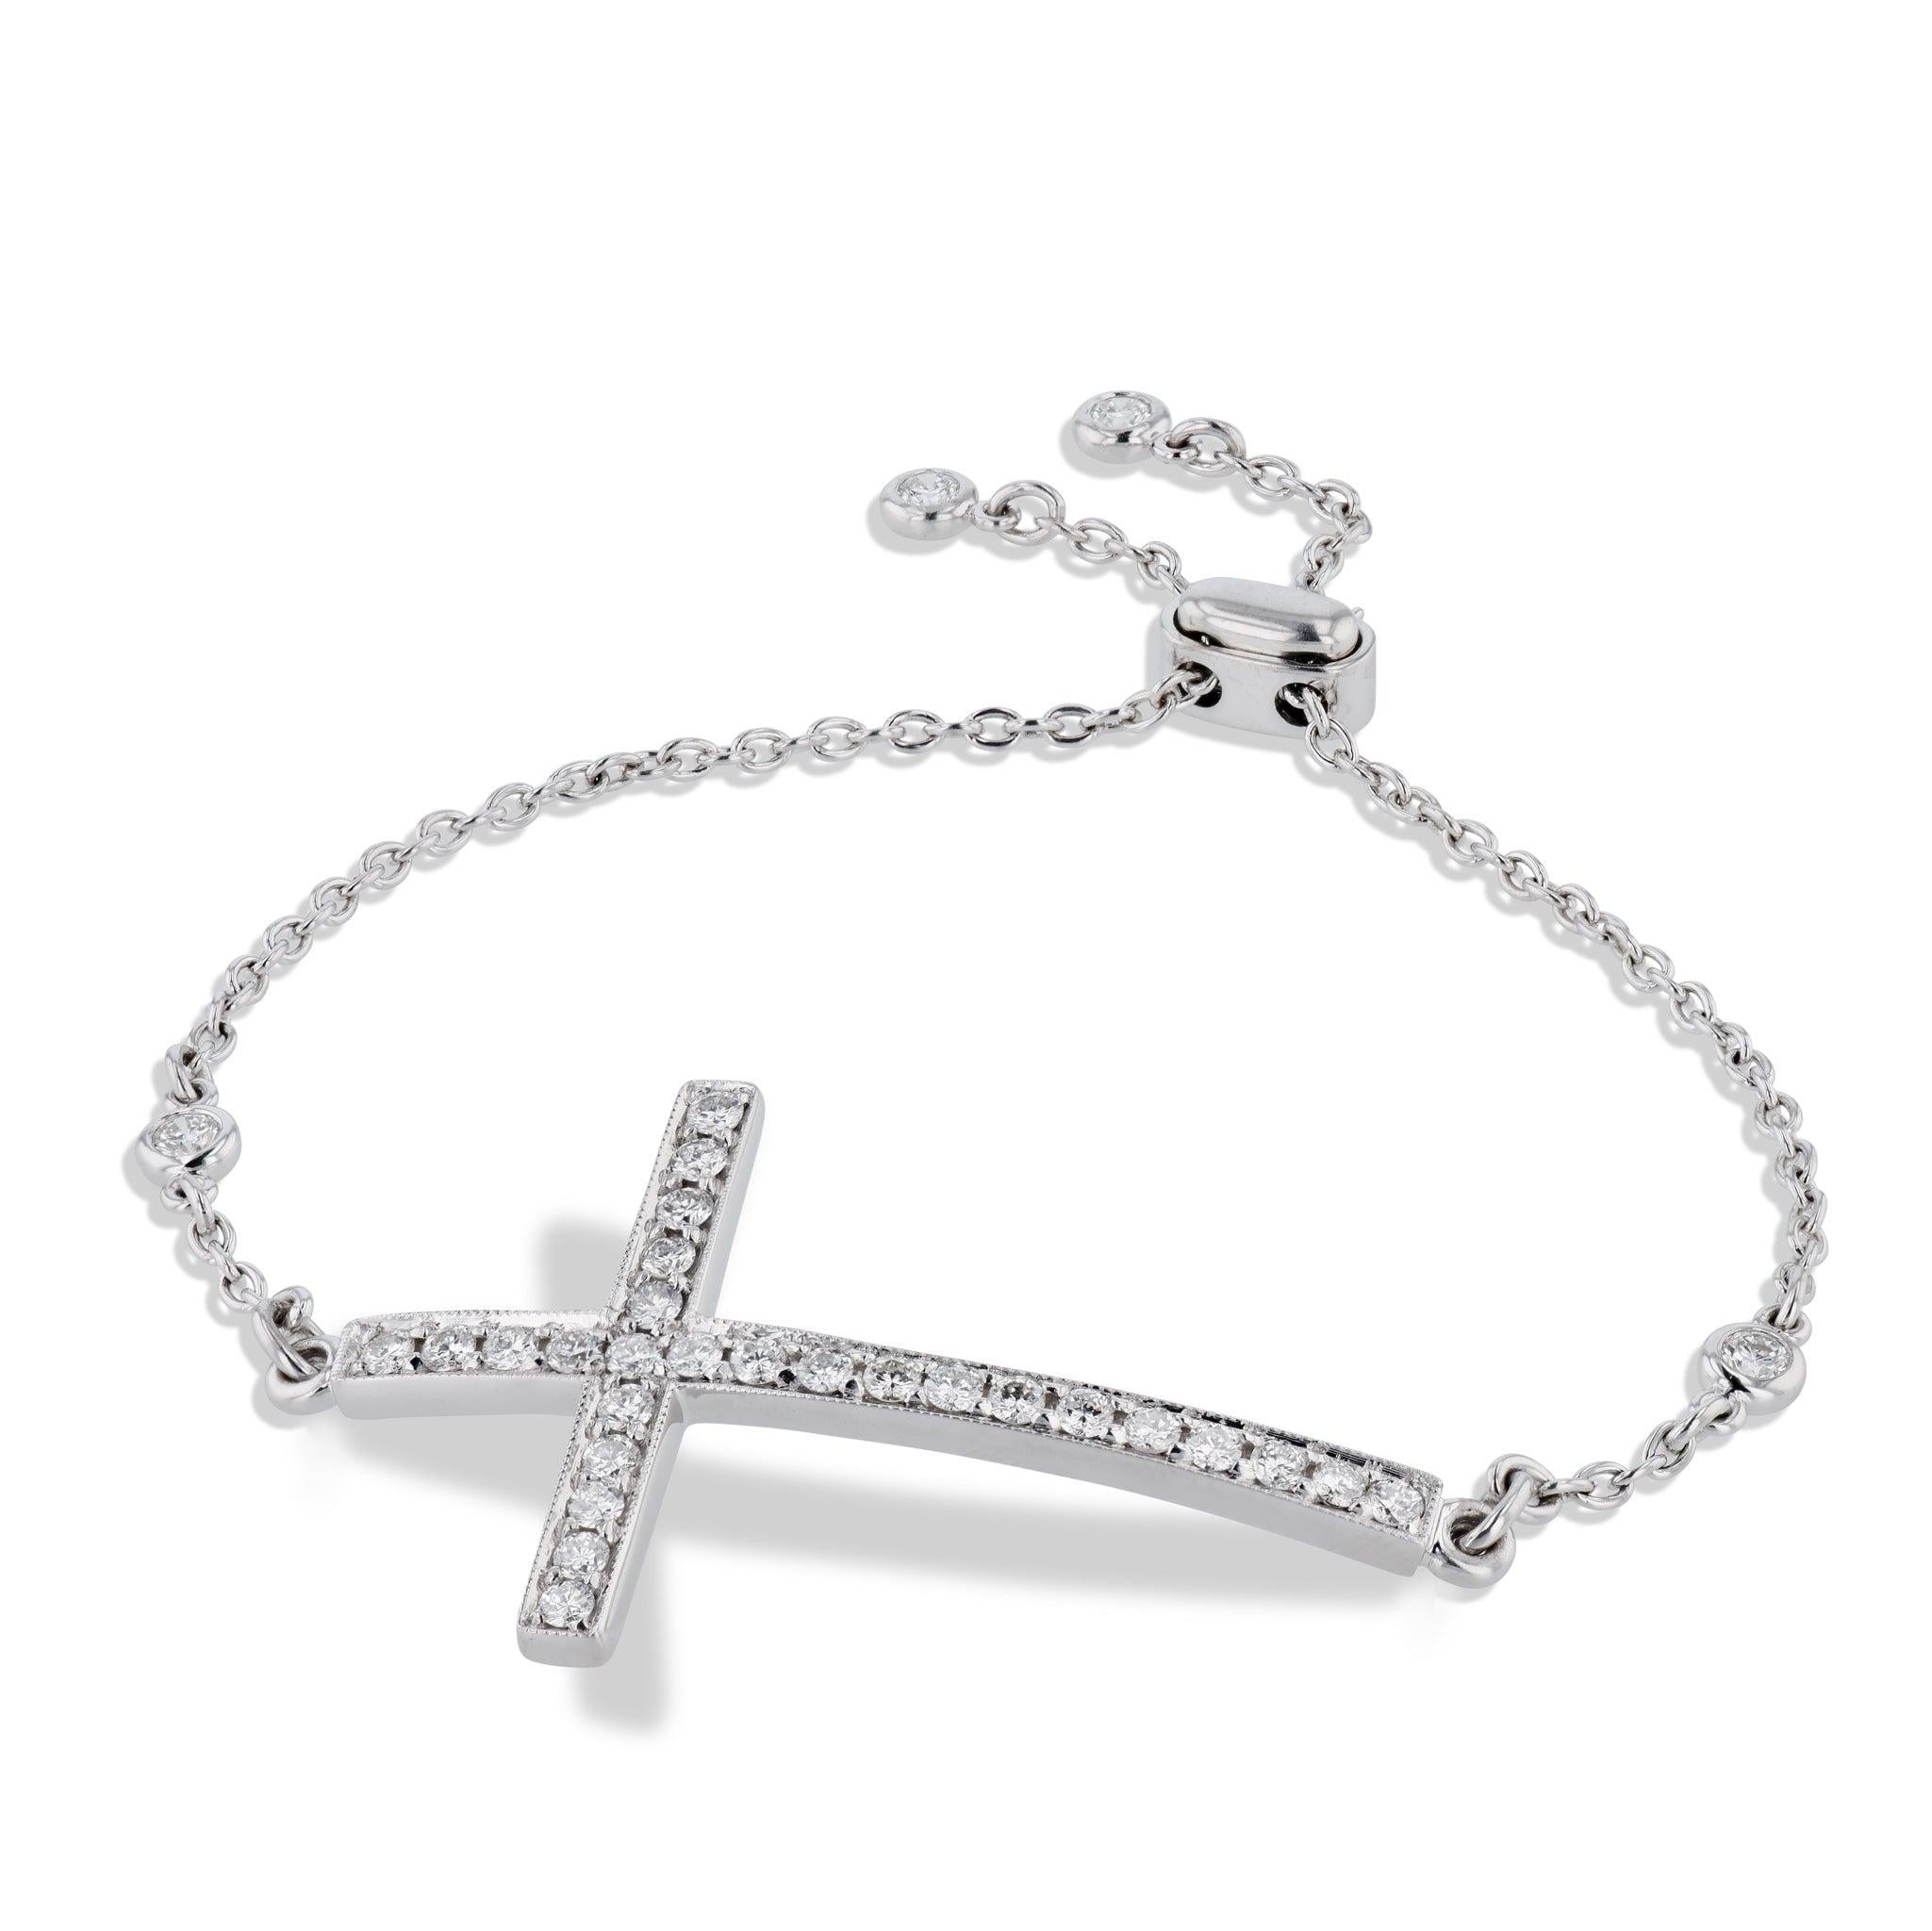 Cet exquis bracelet croix en diamant pavé est réalisé en luxueux or blanc 18kt et en diamants pavés illuminants. La croix en diamant milgrain et le fermoir bolo confèrent une touche individuelle à cette pièce exquise de H & H Jewels.
Bracelet croix